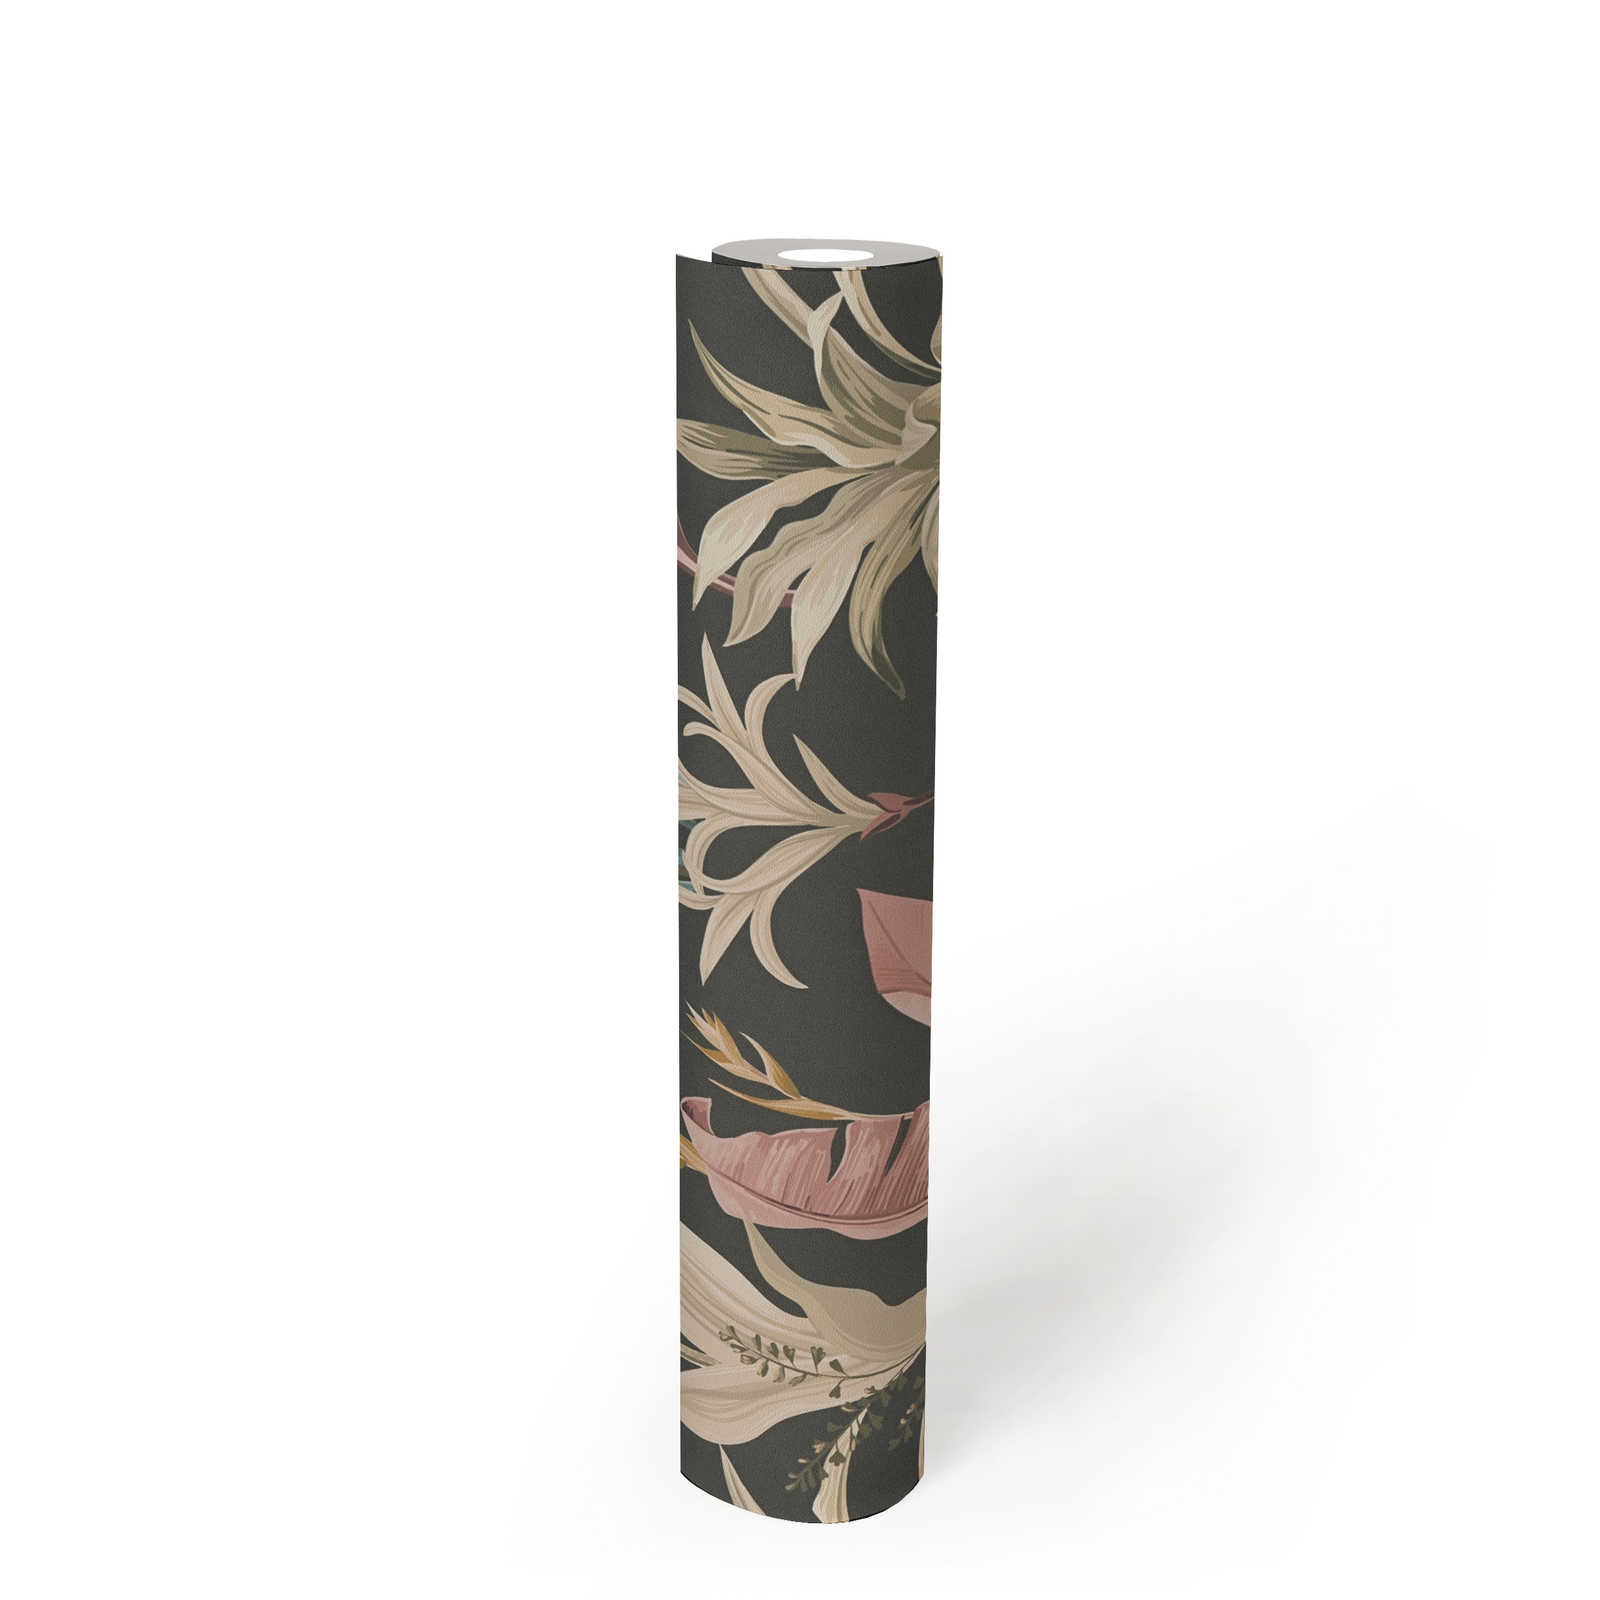             Papier peint intissé avec motif floral feuilles détaillé - bleu, rose, marron
        